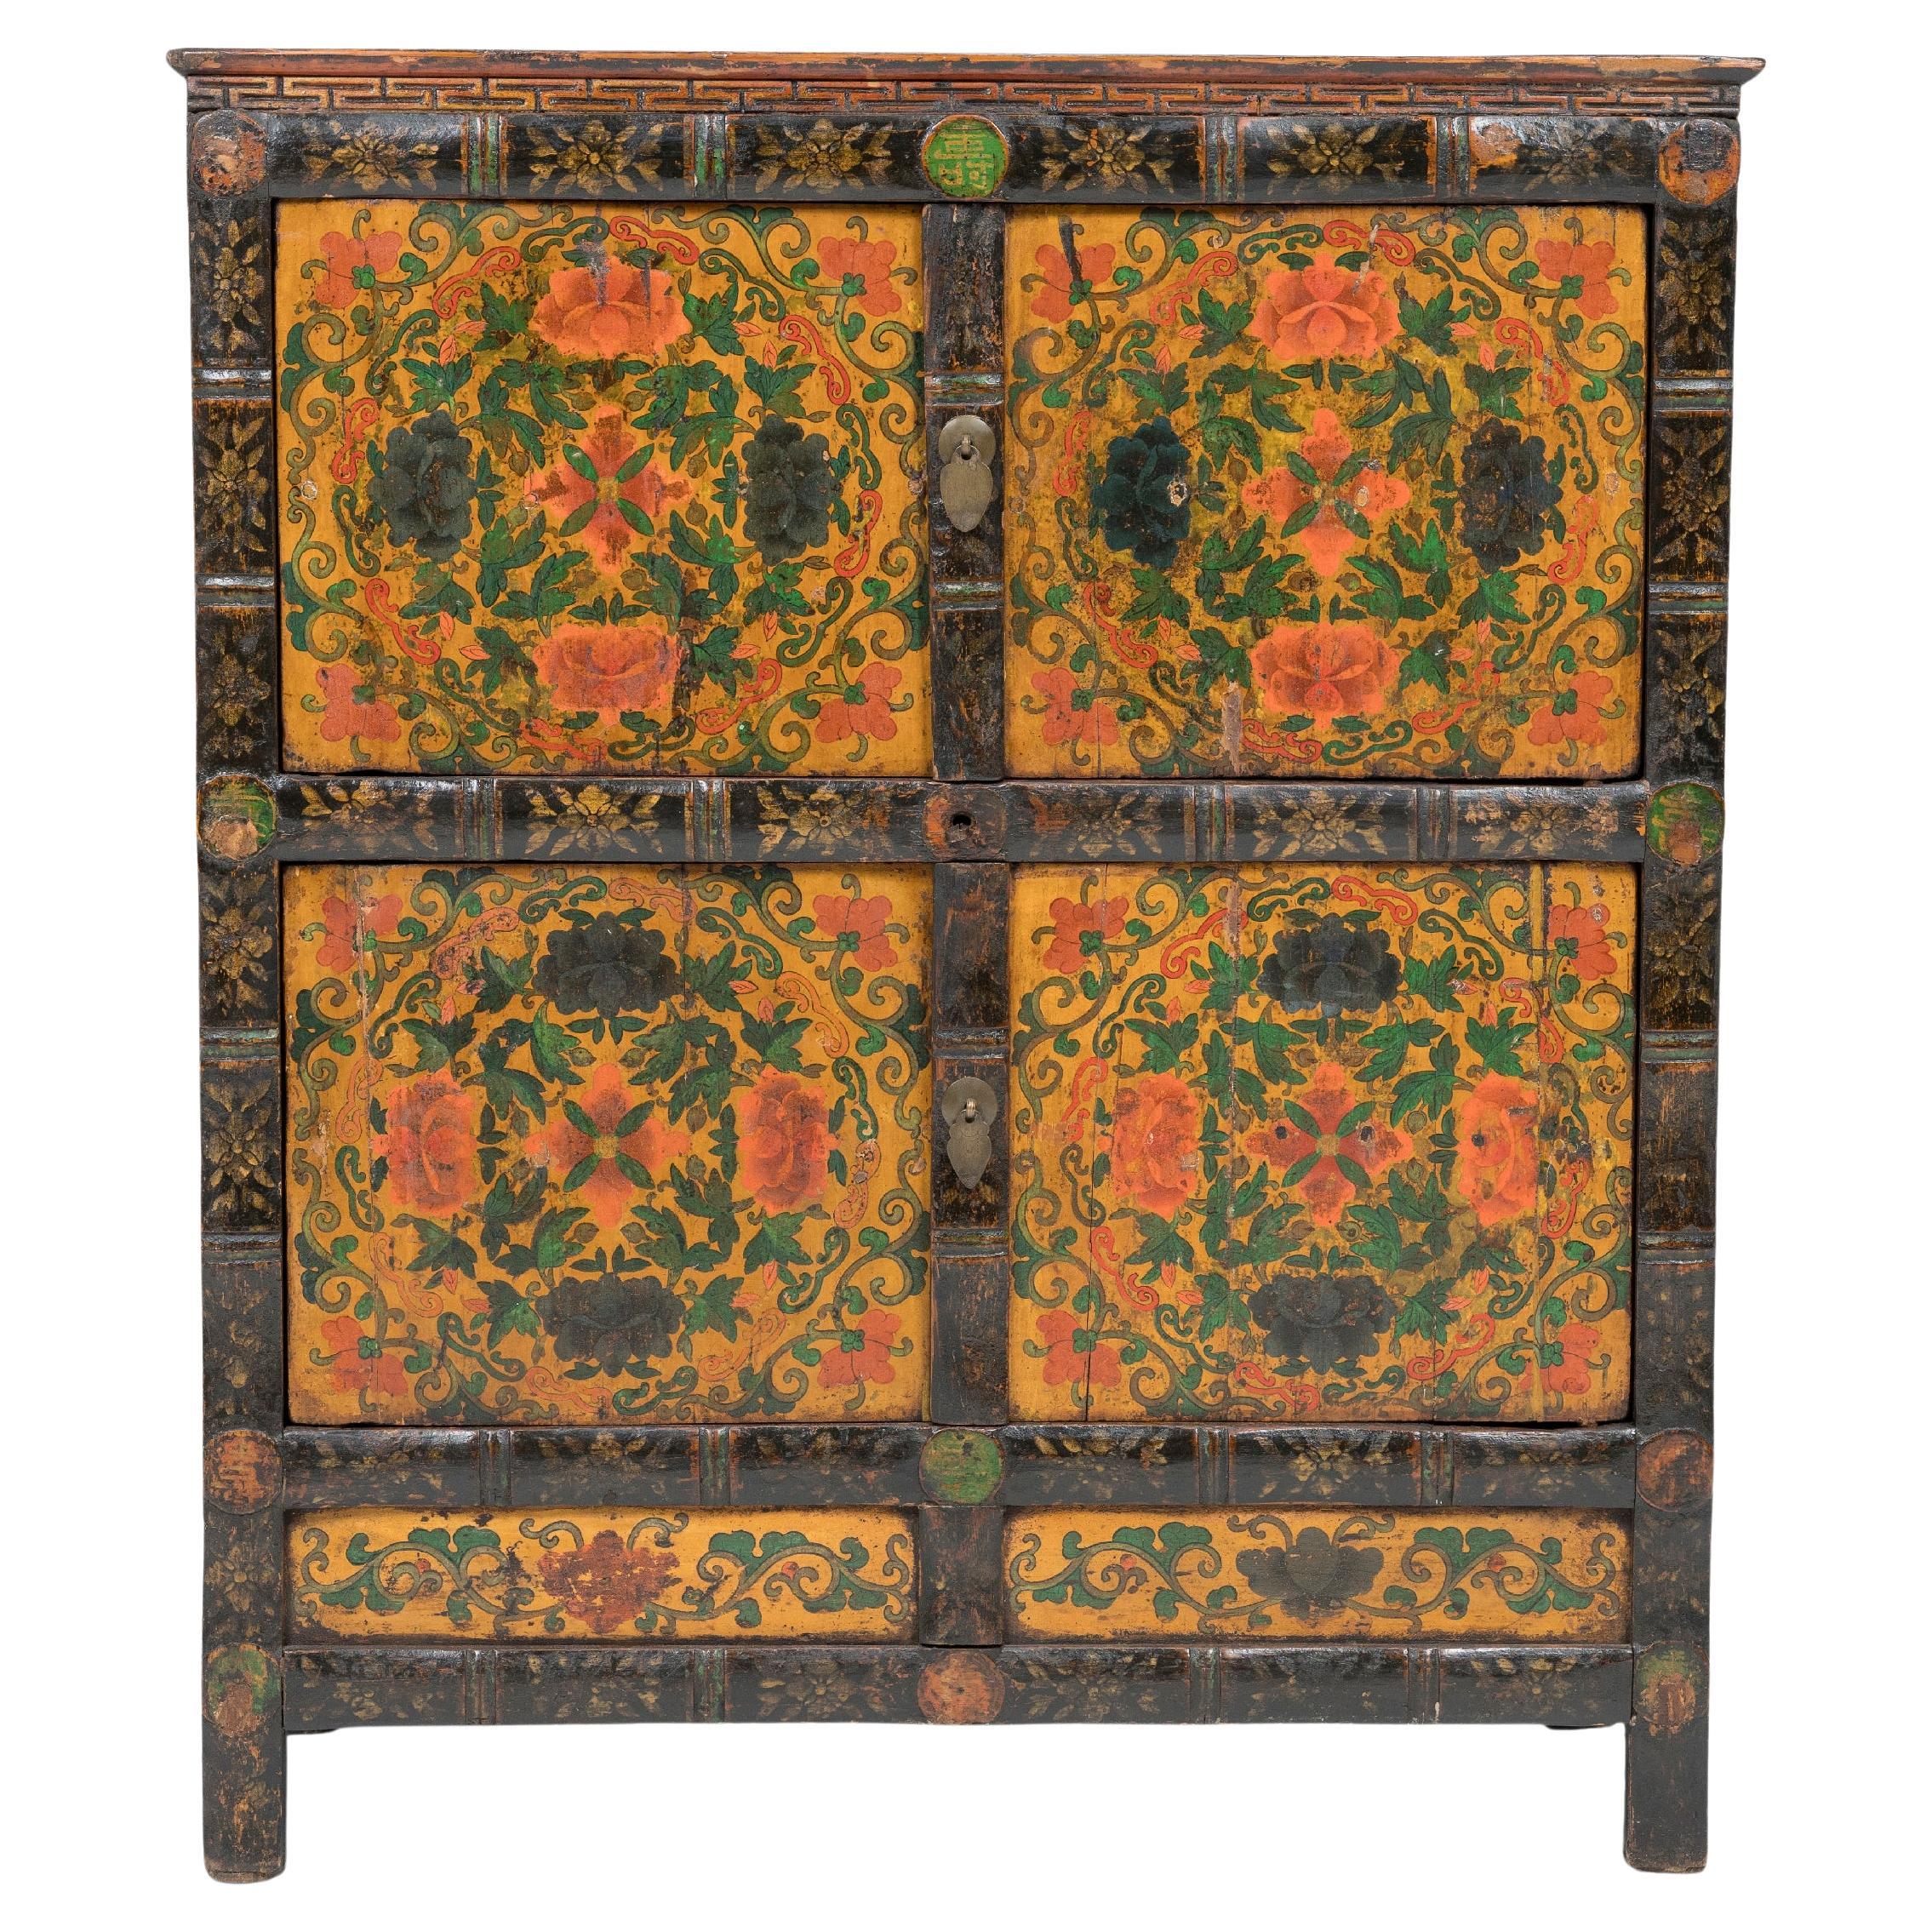 Tibetan Golden Peony Cabinet, c. 1850